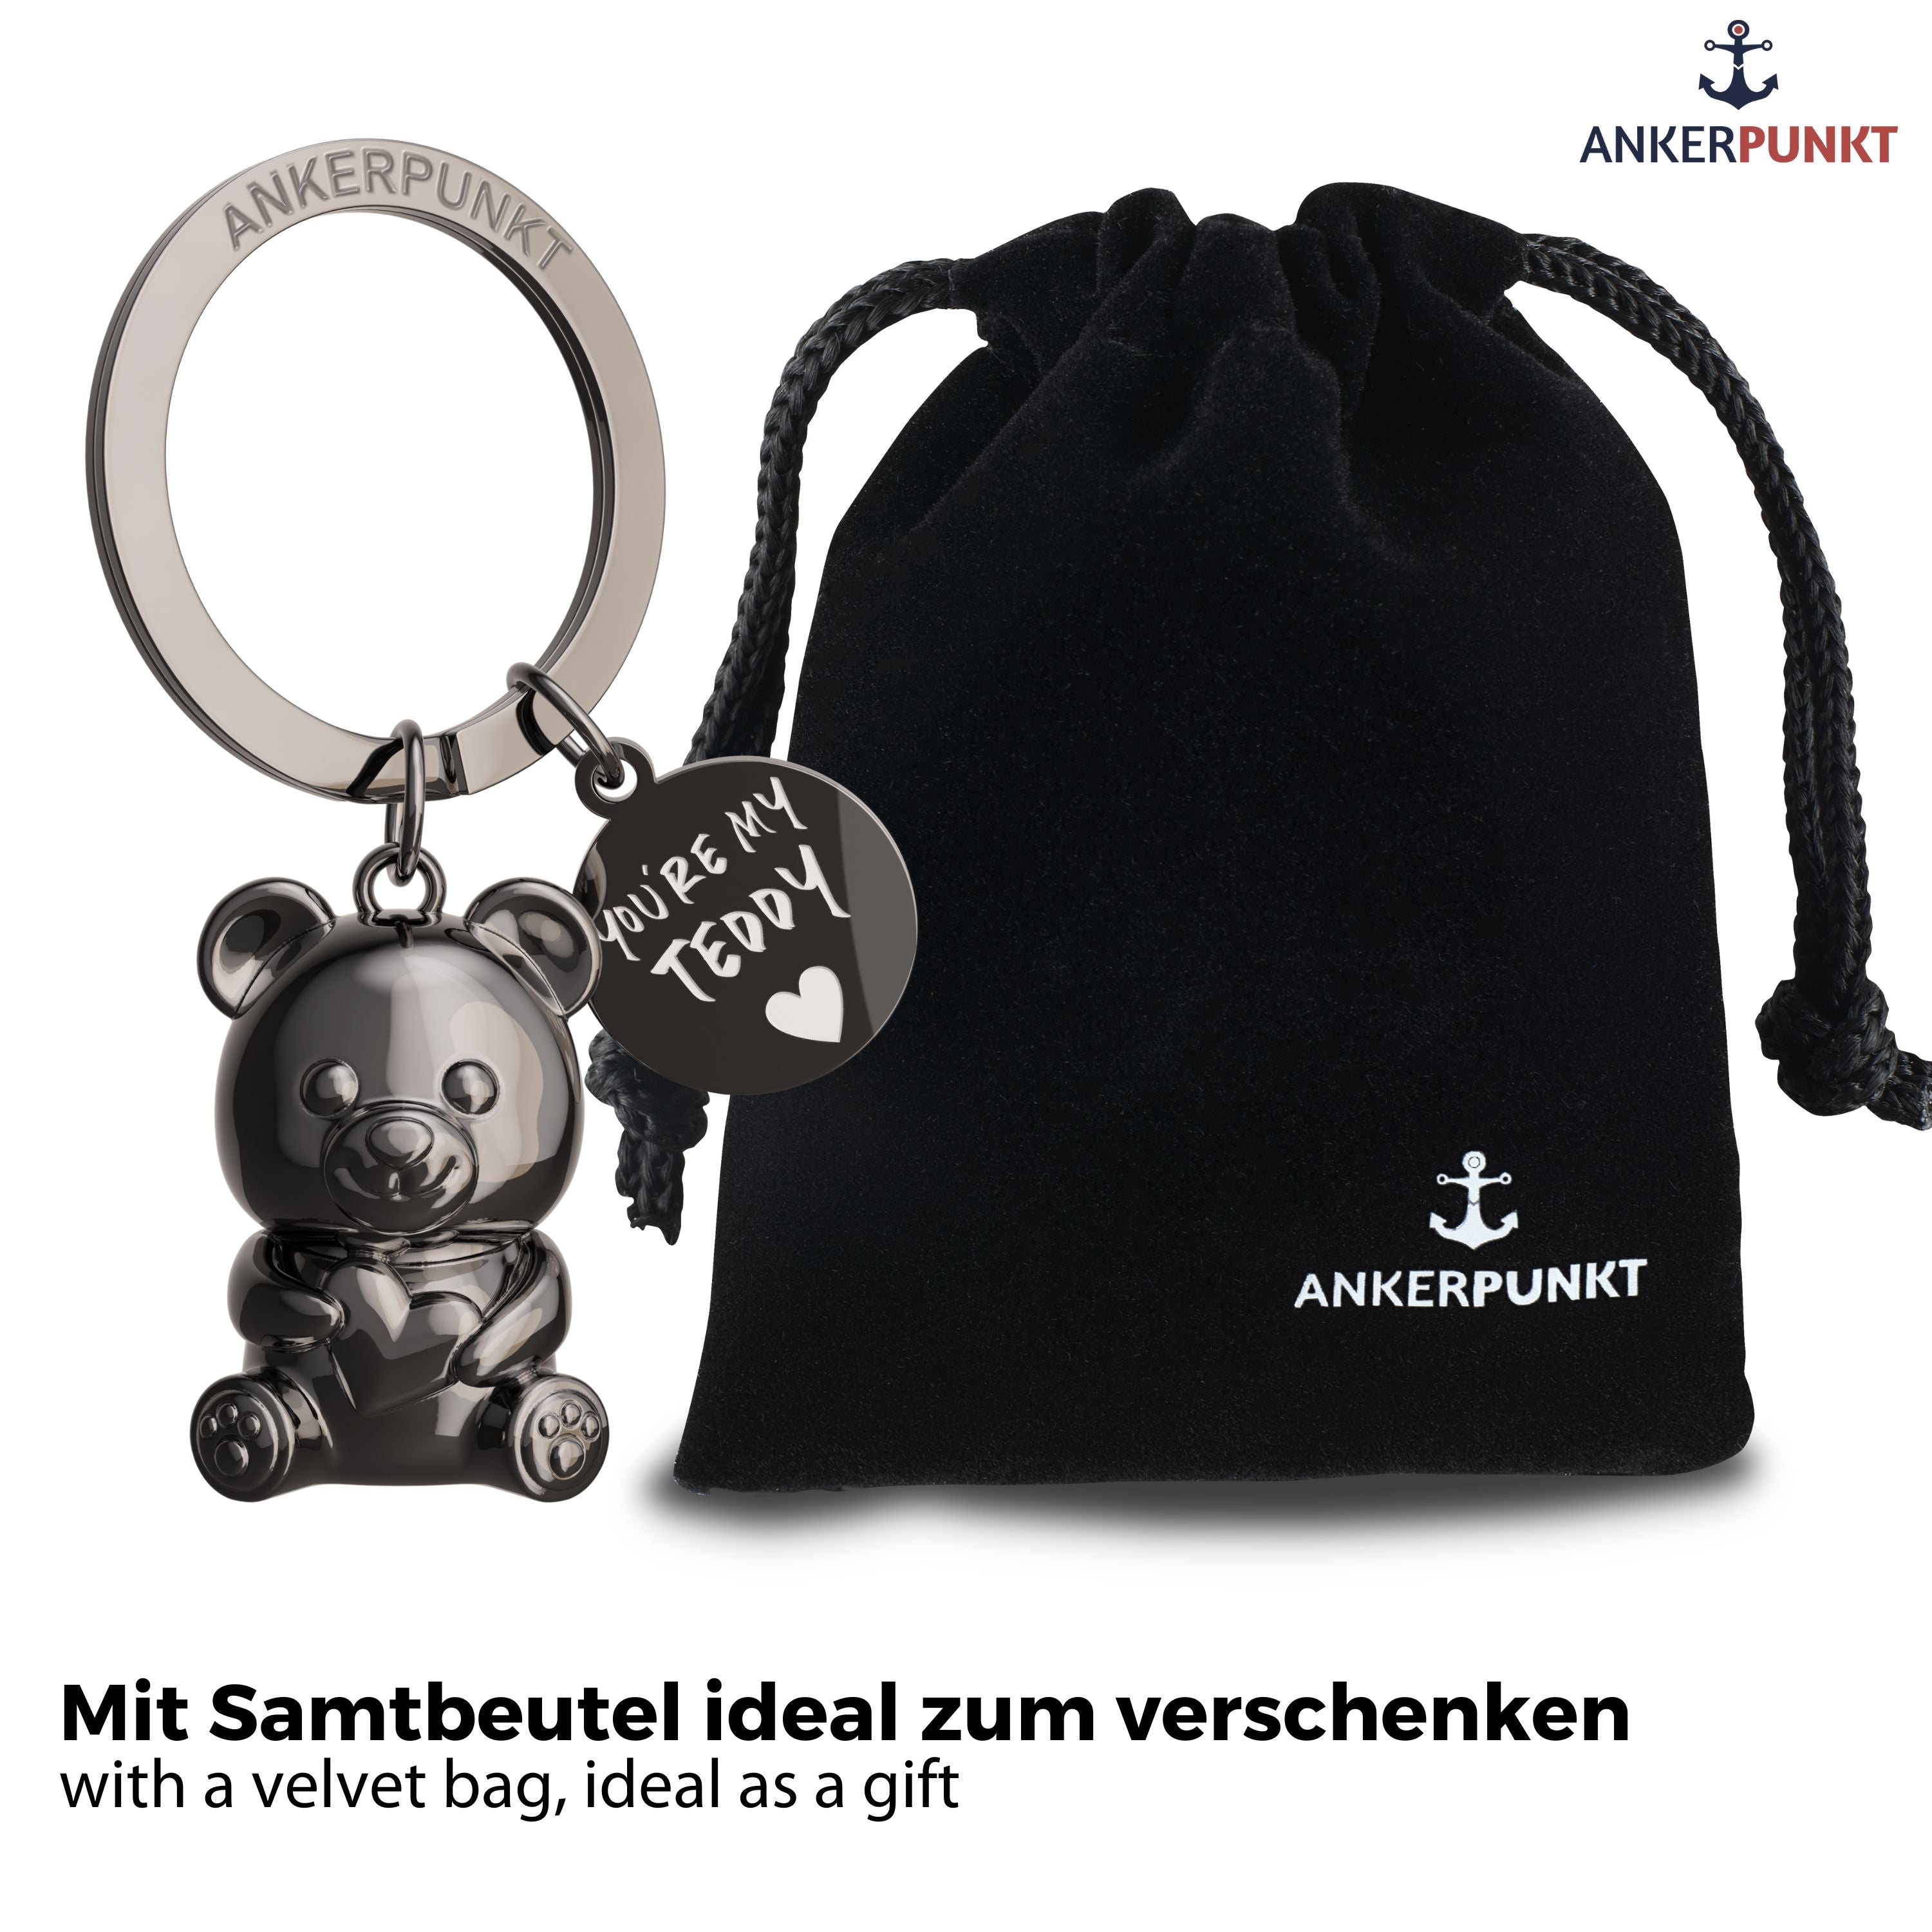 Teddybär Schlüsselanhänger in schwarz glänzend mit Anhängerplättchen mit Gravur "You're my Teddy", daneben ein Samtbeutel mit Ankerpunkt-Logo